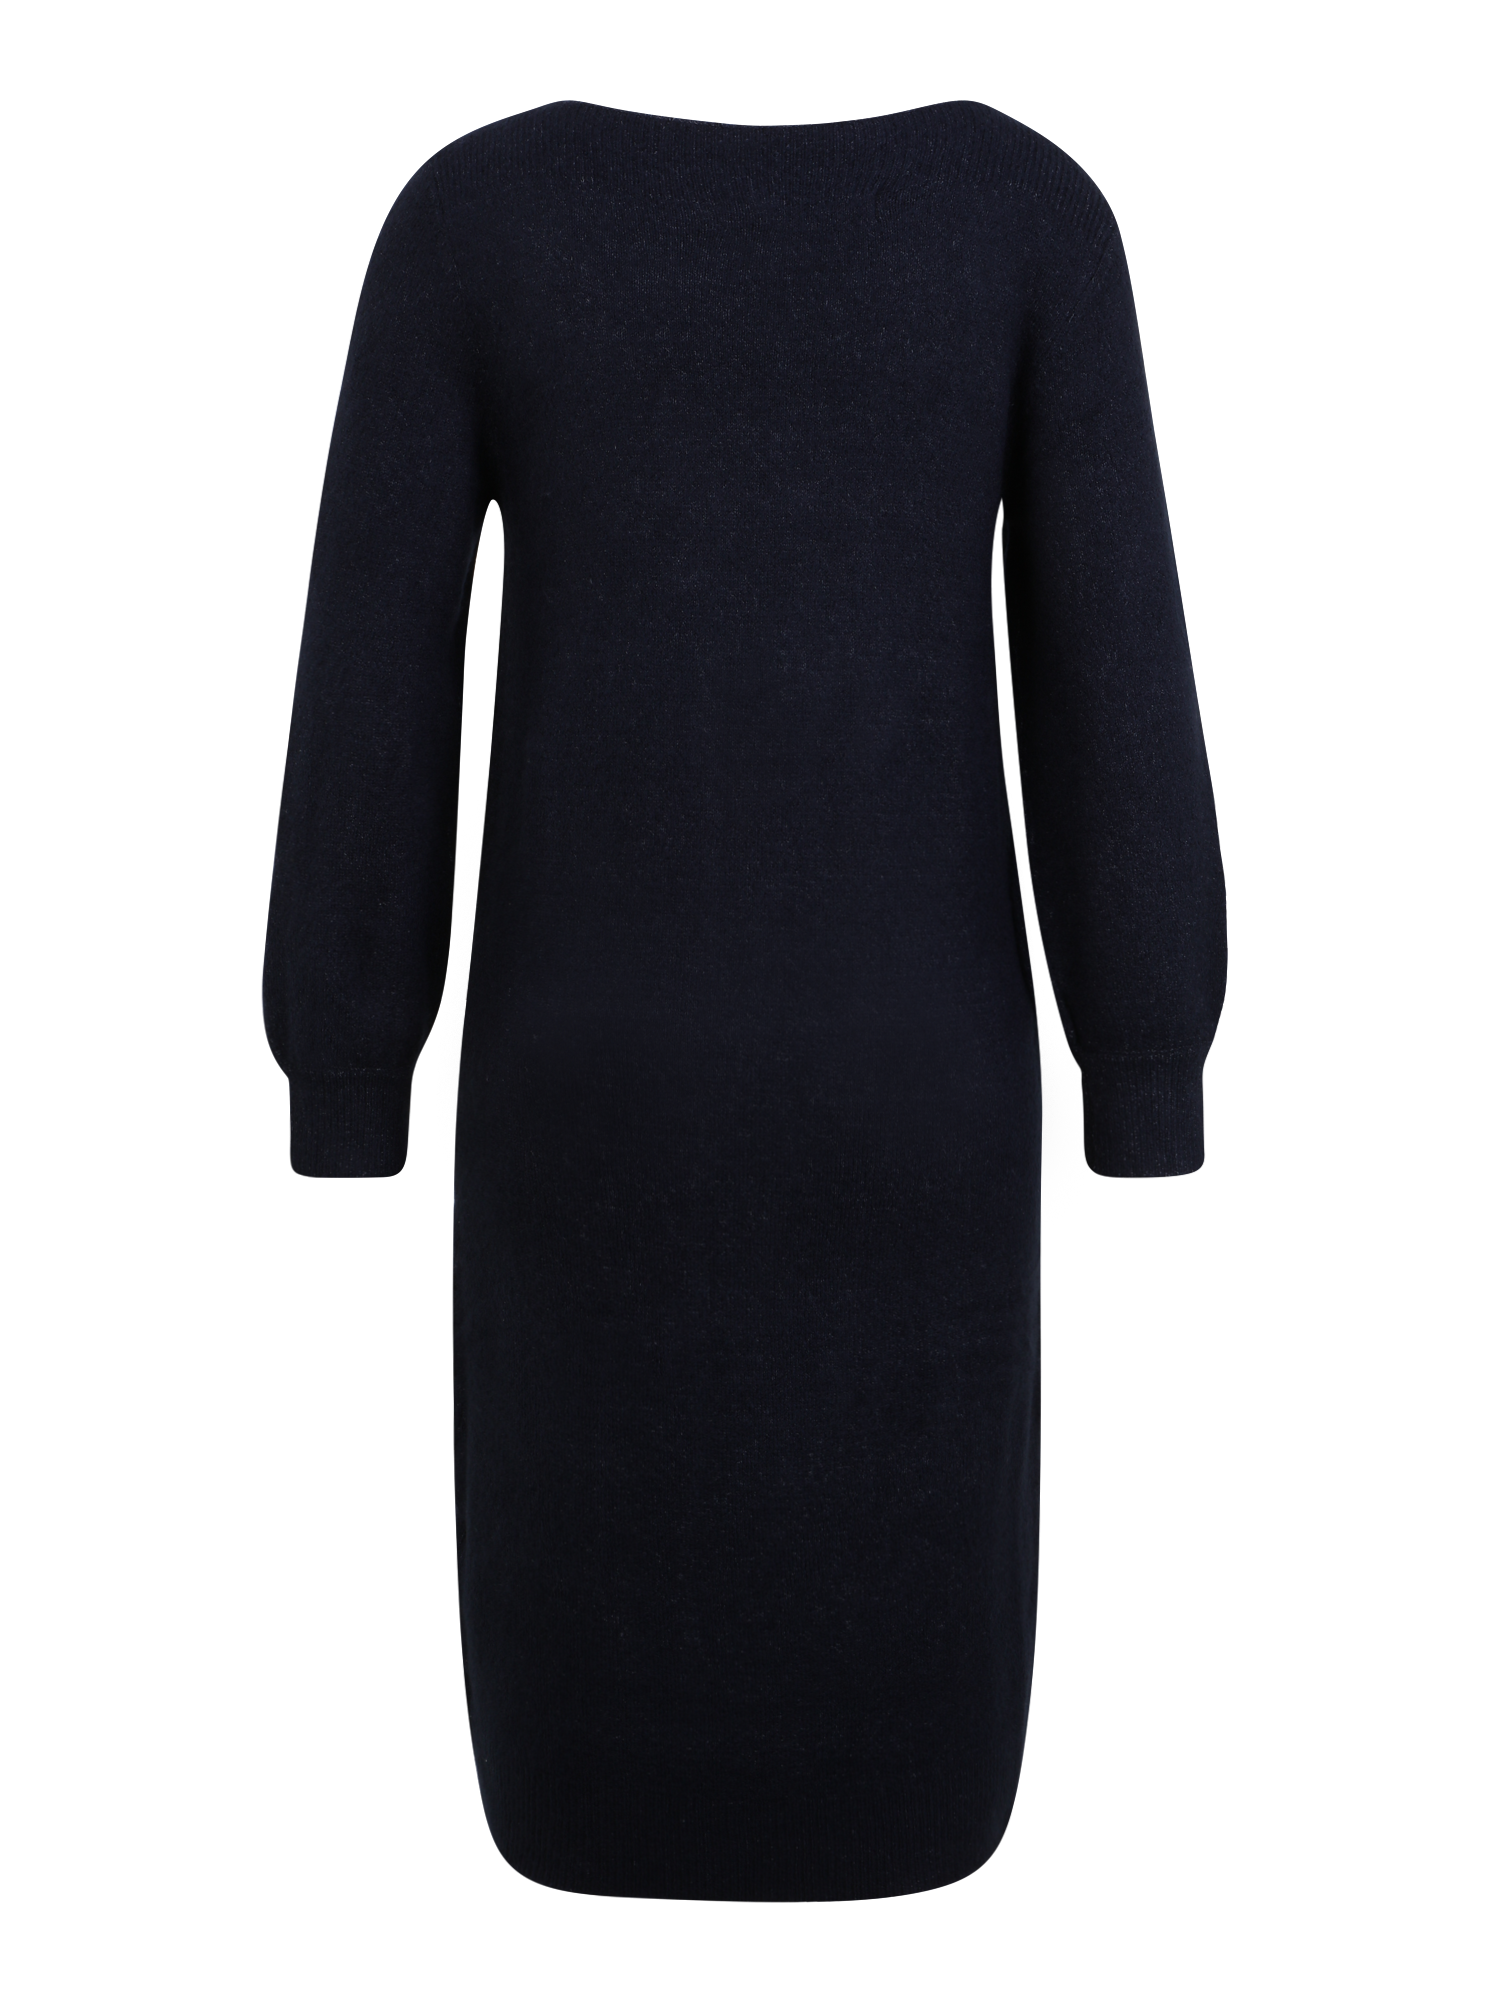 Odzież Sukienki Vero Moda Tall Sukienka z dzianiny LEFILE w kolorze Granatowym 